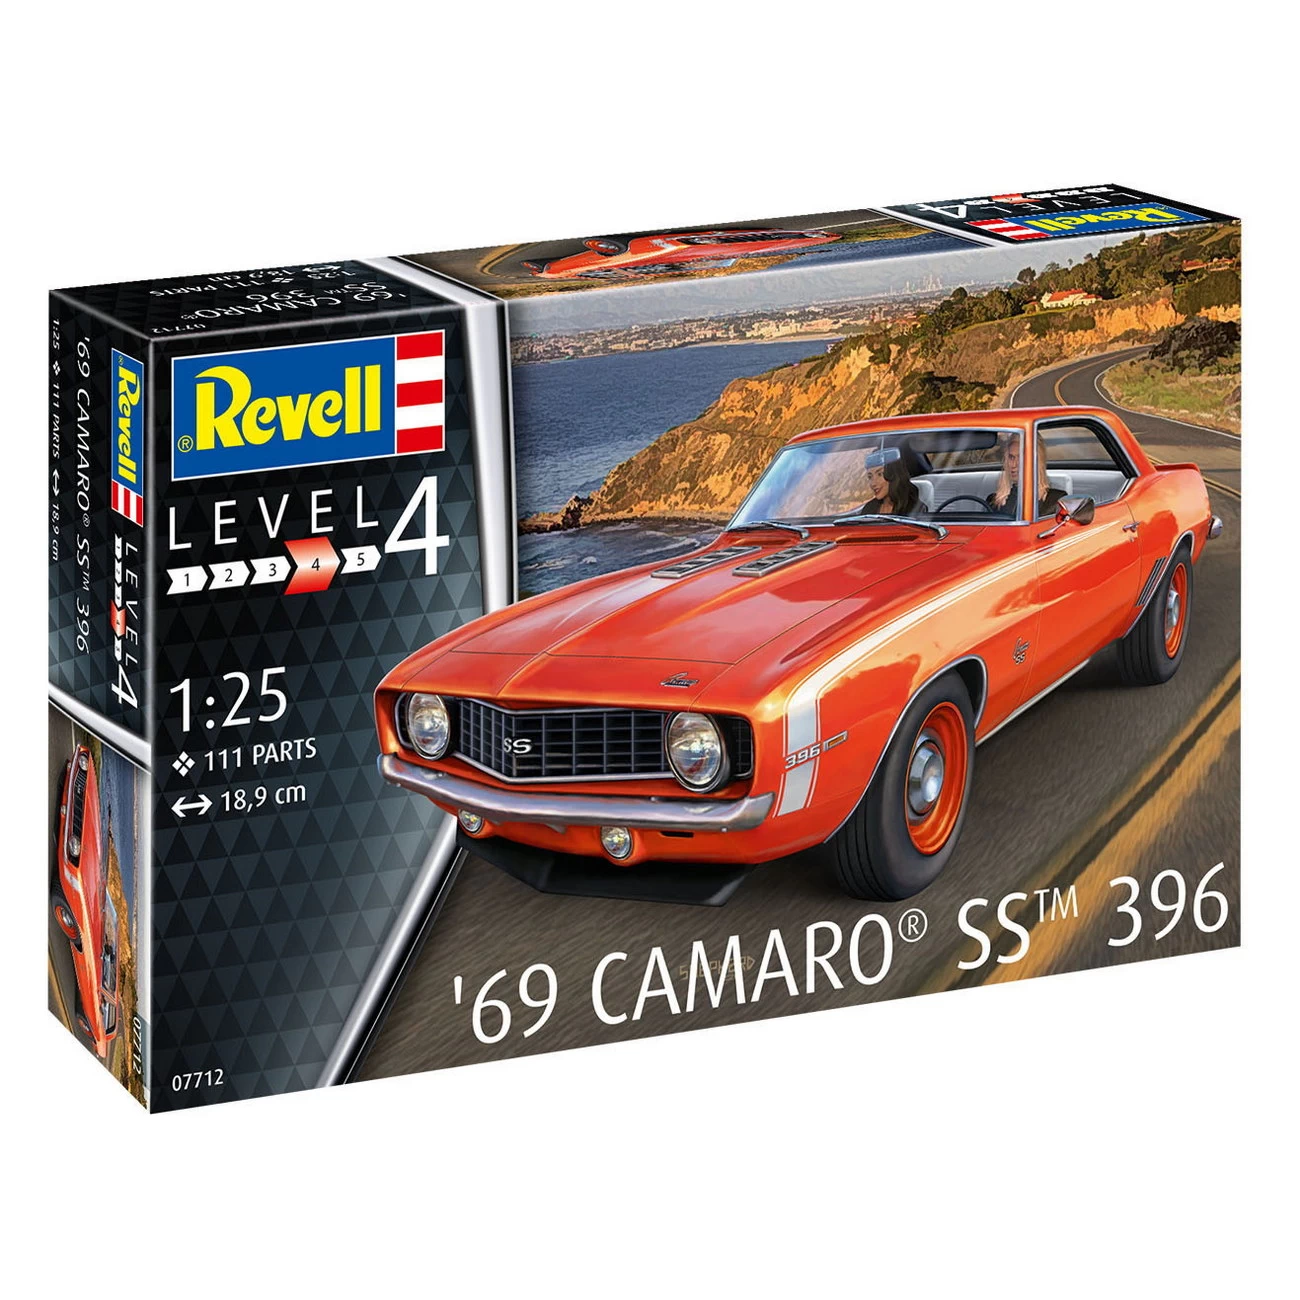 Revell 07712 - '69 Camaro SST 396